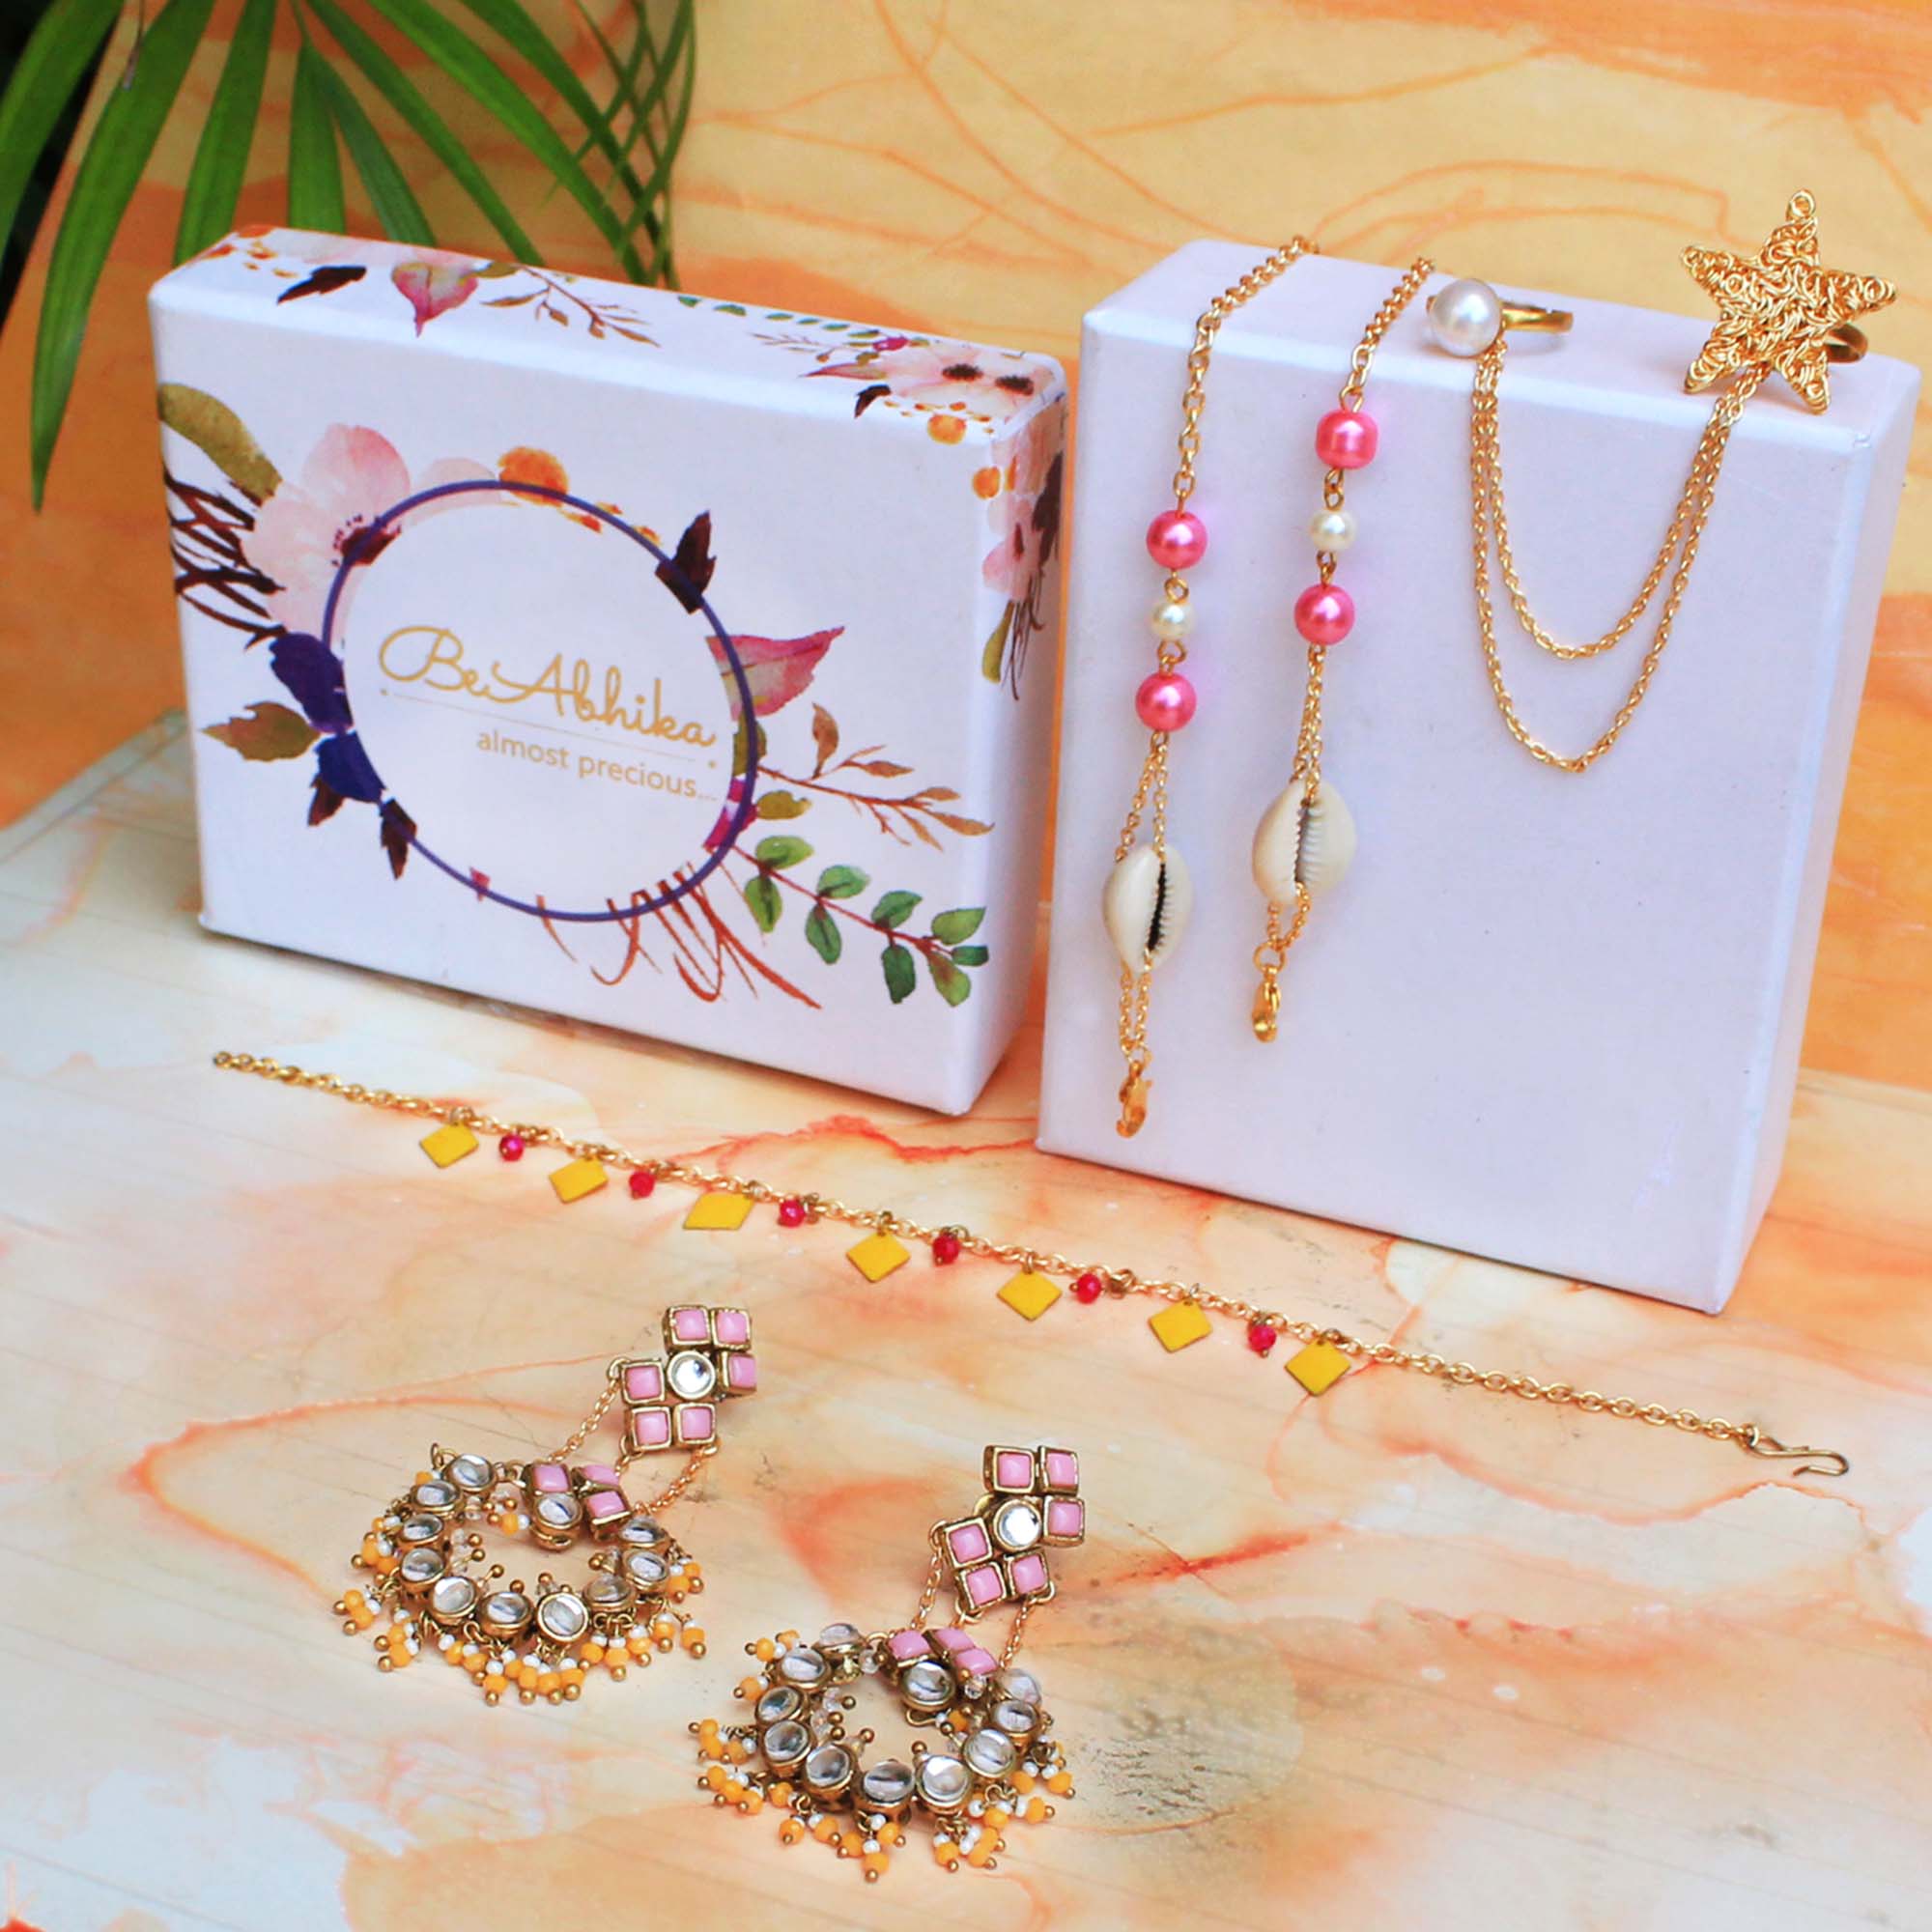 Jewelry & Accessory Box For Haldi